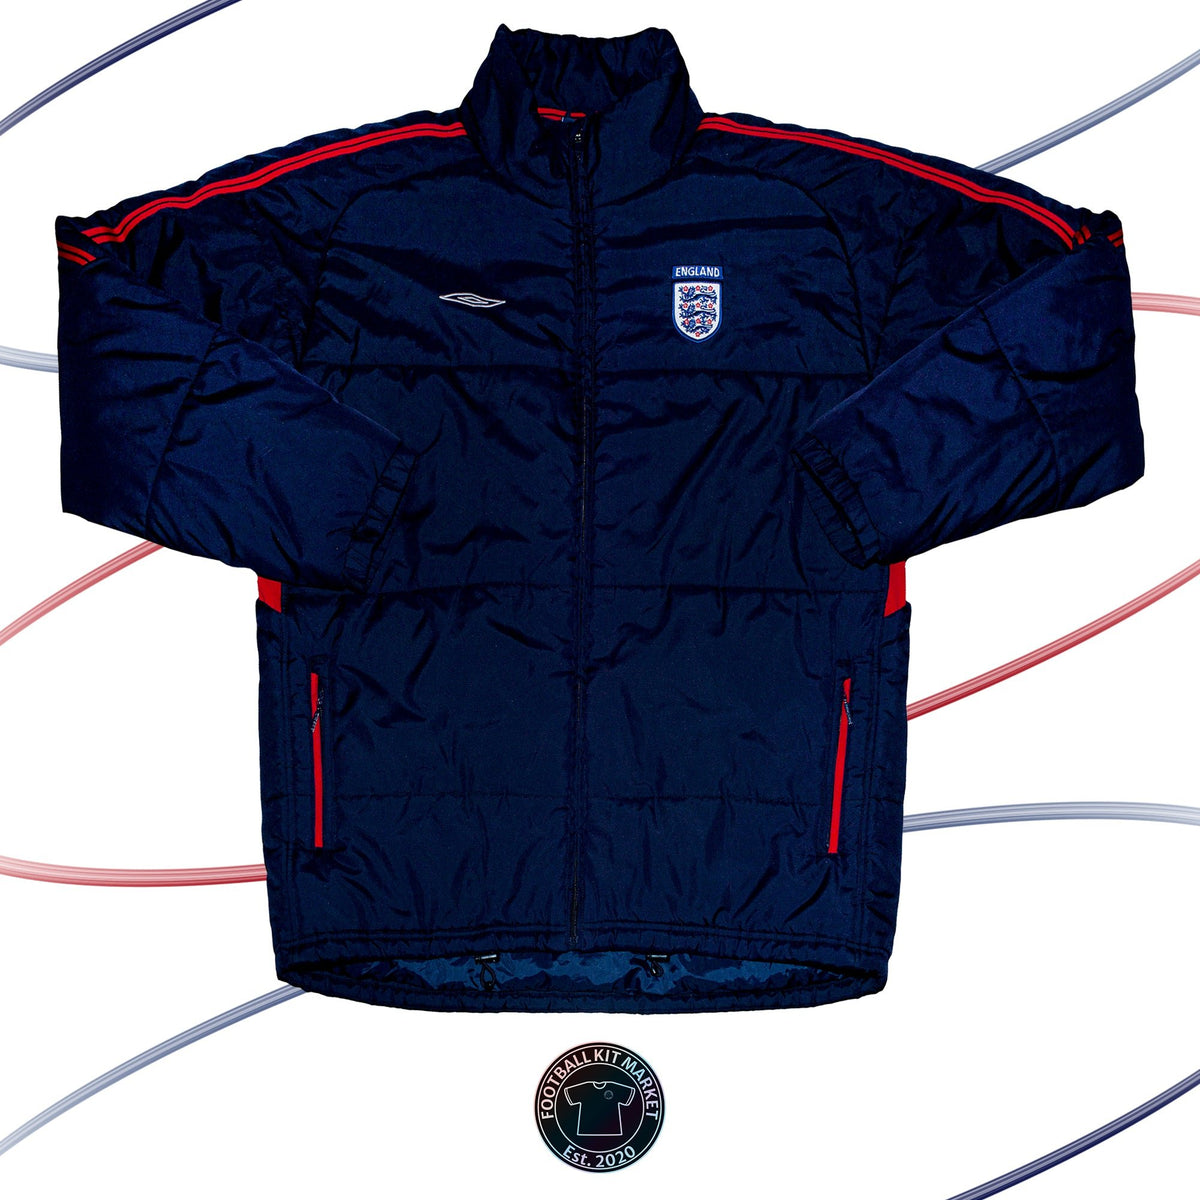 Genuine ENGLAND Jacket - UMBRO (L) - Product Image from Football Kit Market